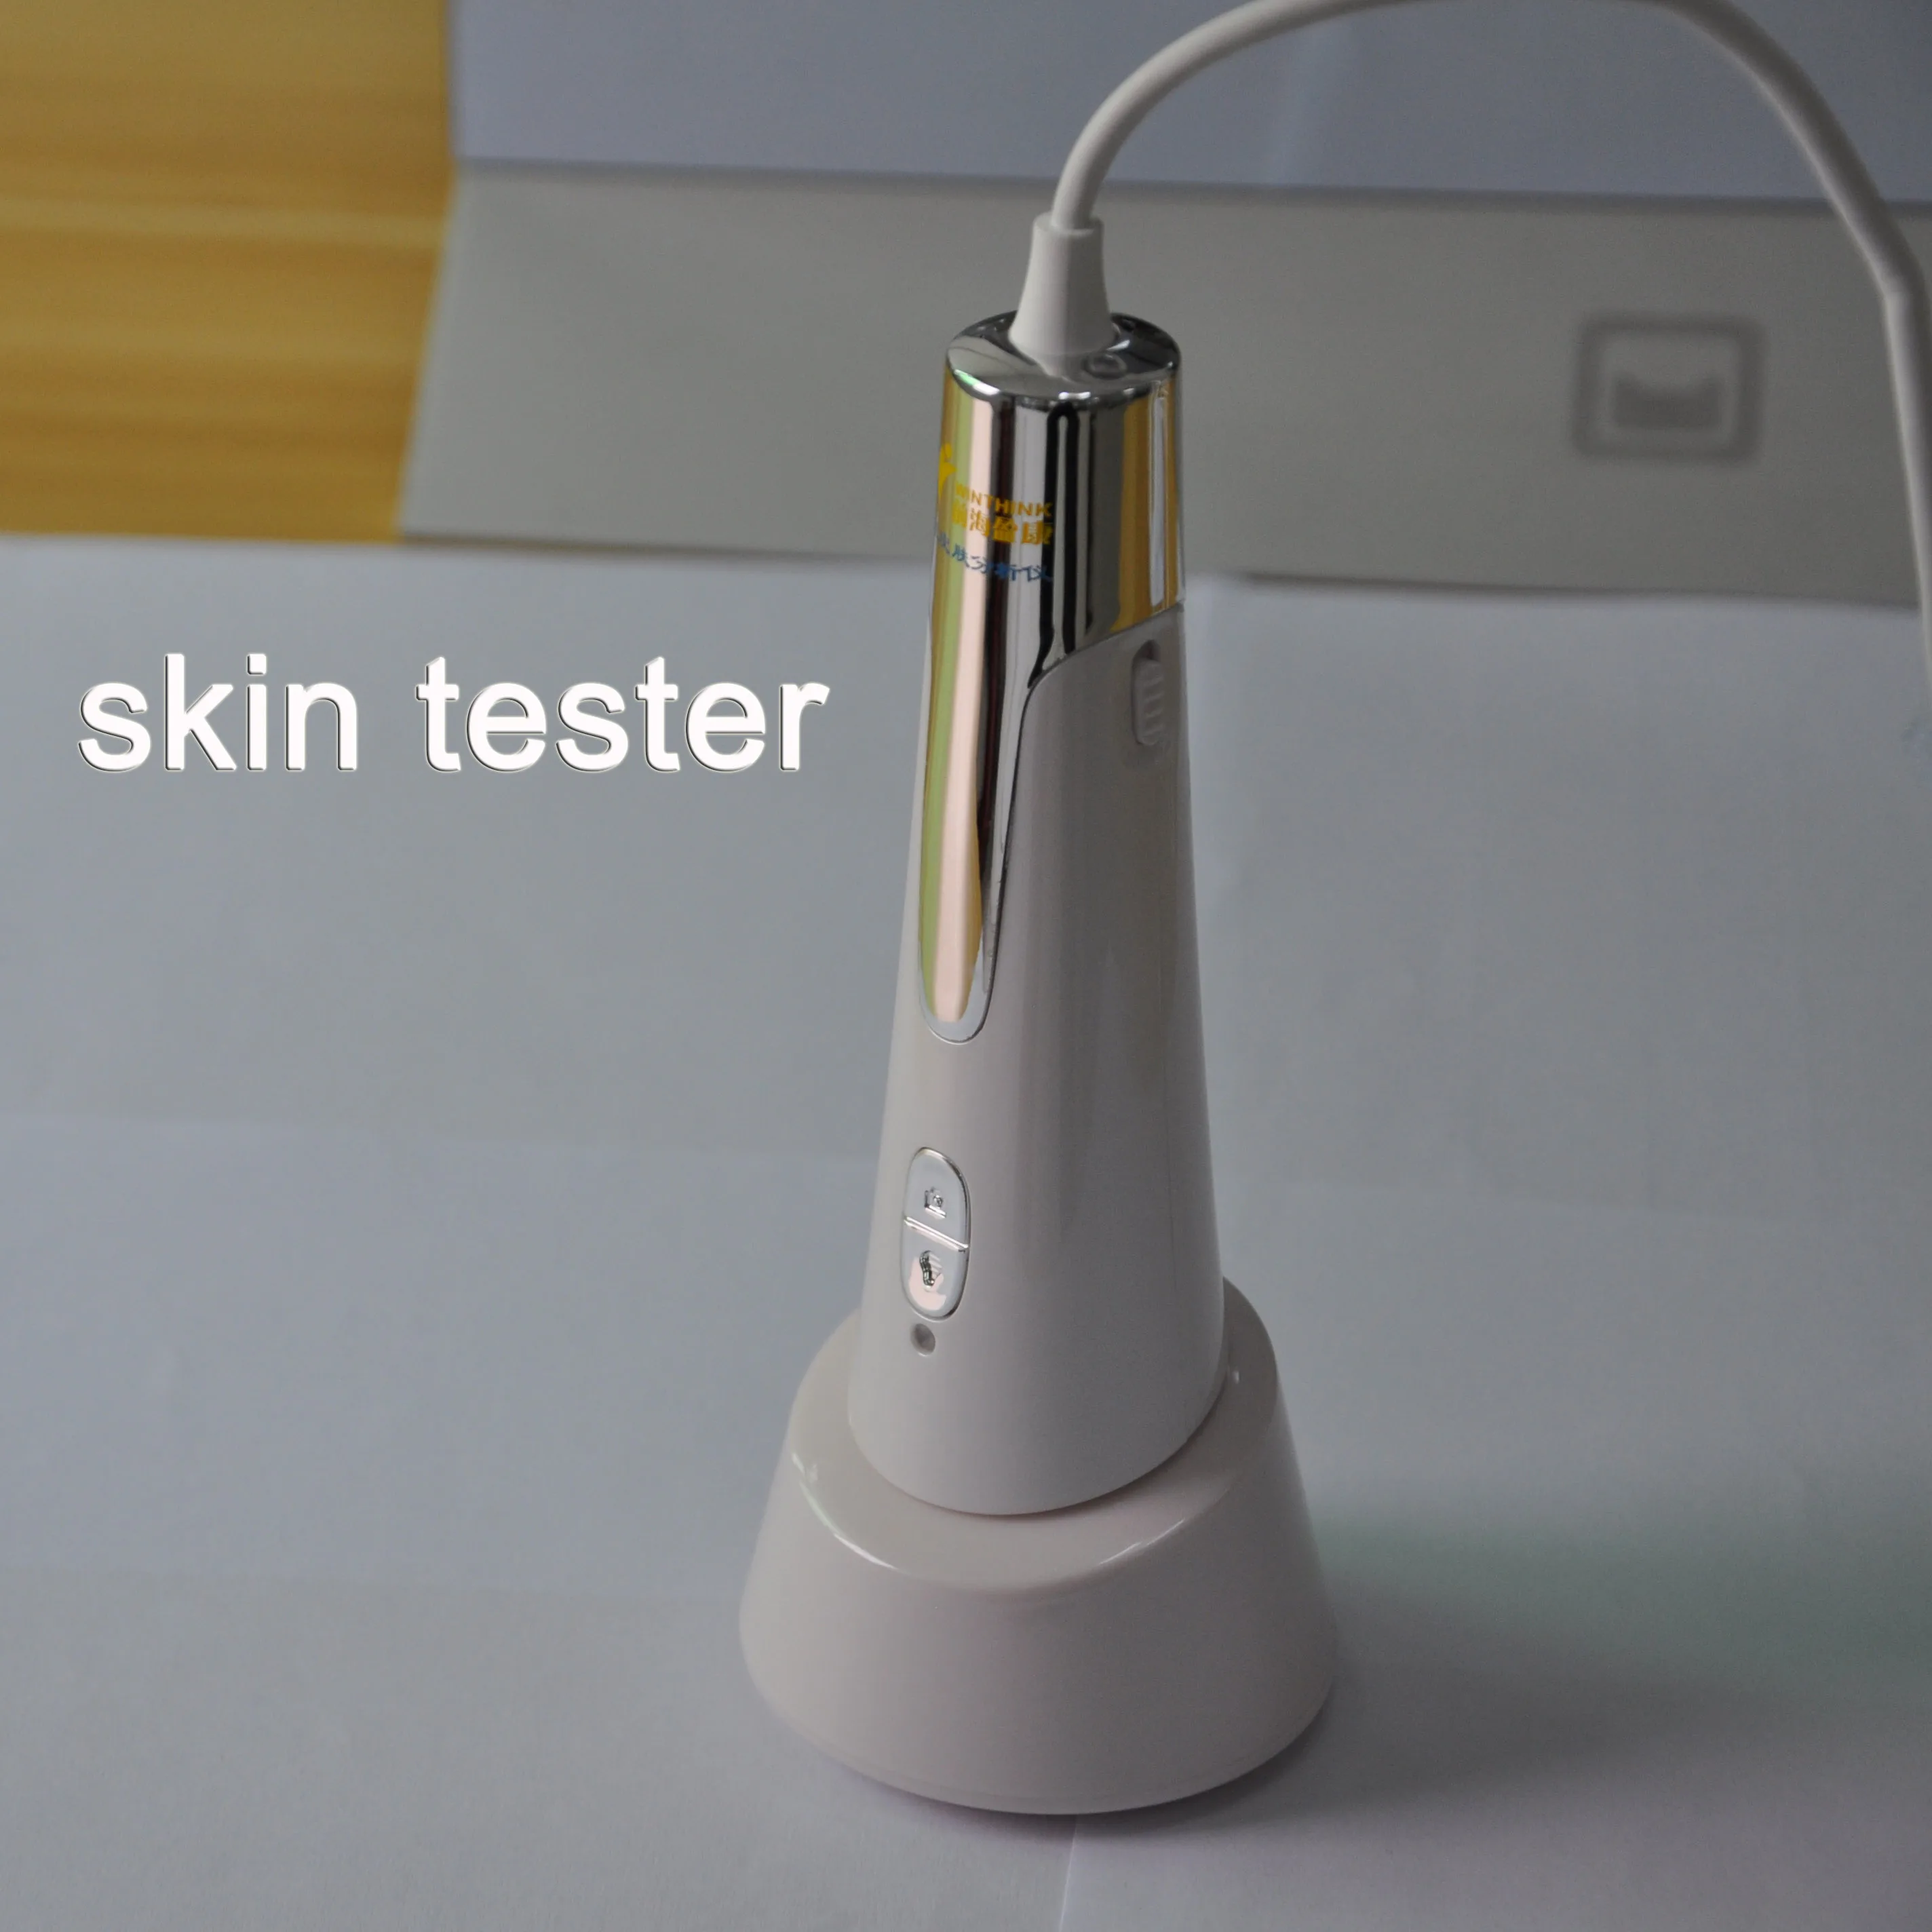 Tanie Nowy kolor skóry Tester urządzenie kosmetyczne magiczne lustro analizator cery twarz Problem